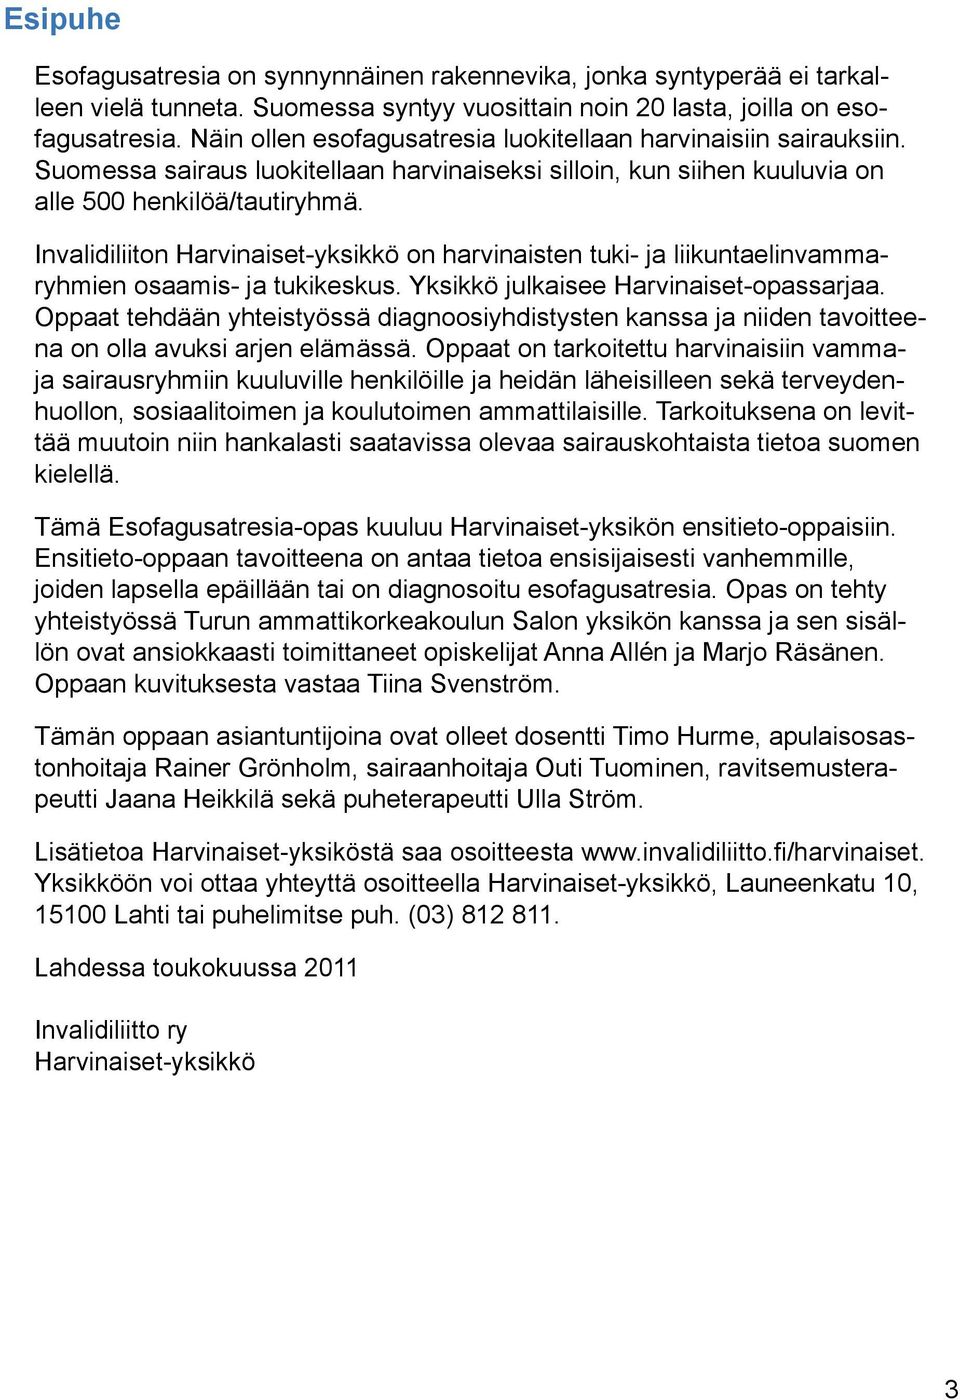 Invalidiliiton Harvinaiset-yksikkö on harvinaisten tuki- ja liikuntaelinvammaryhmien osaamis- ja tukikeskus. Yksikkö julkaisee Harvinaiset-opassarjaa.